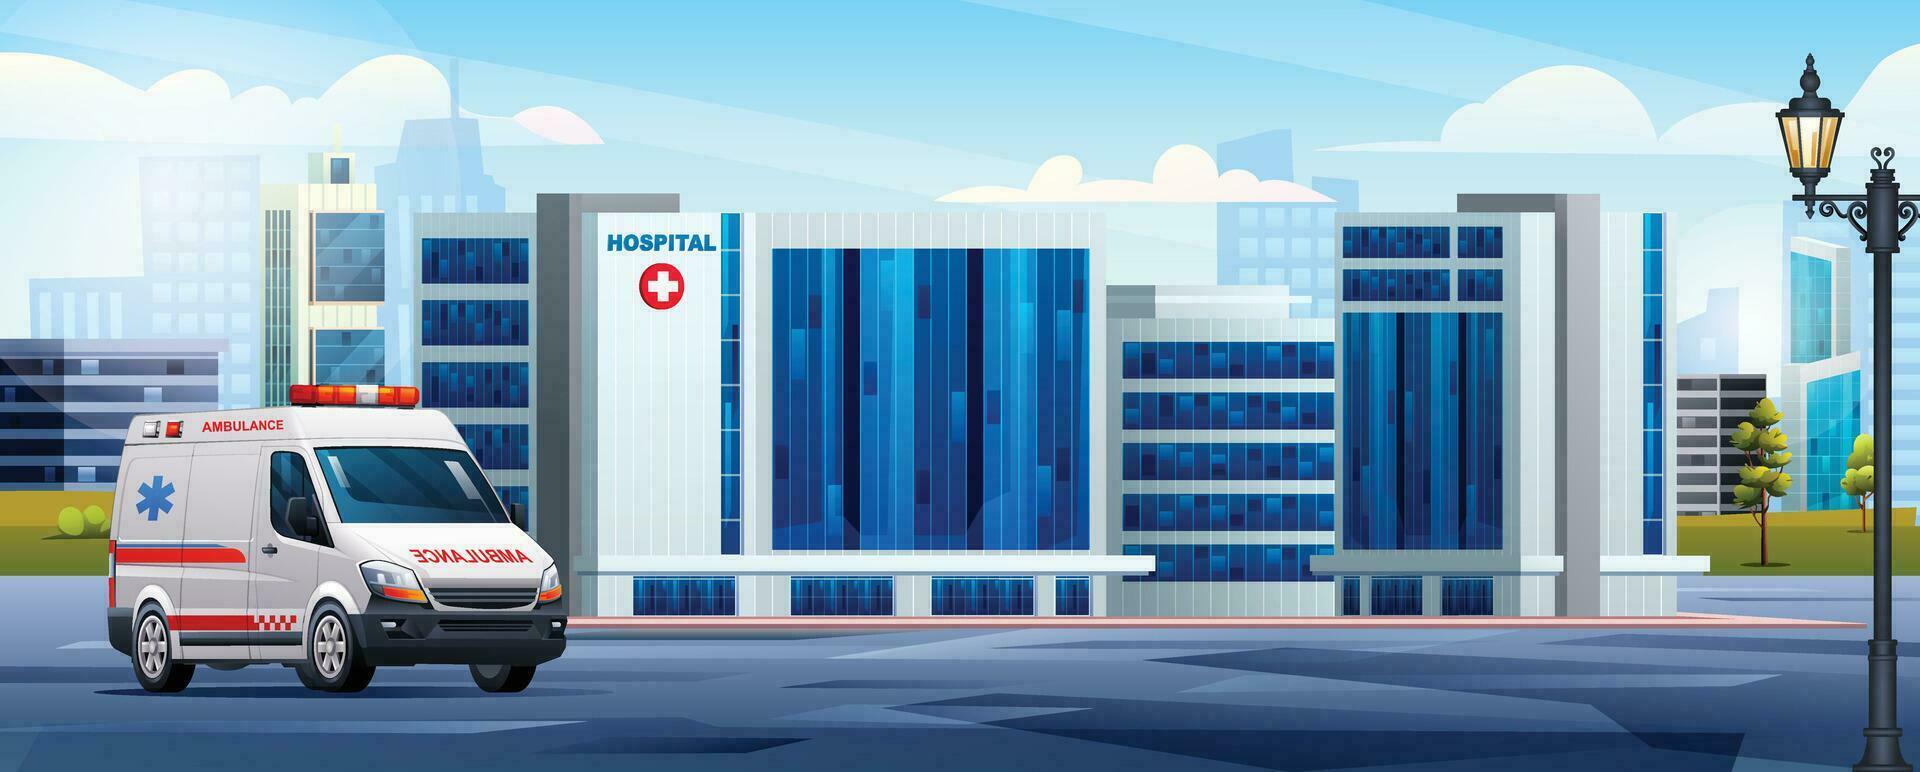 sjukhus byggnad med ambulans nödsituation bil i stad. medicinsk klinik design landskap vektor illustration